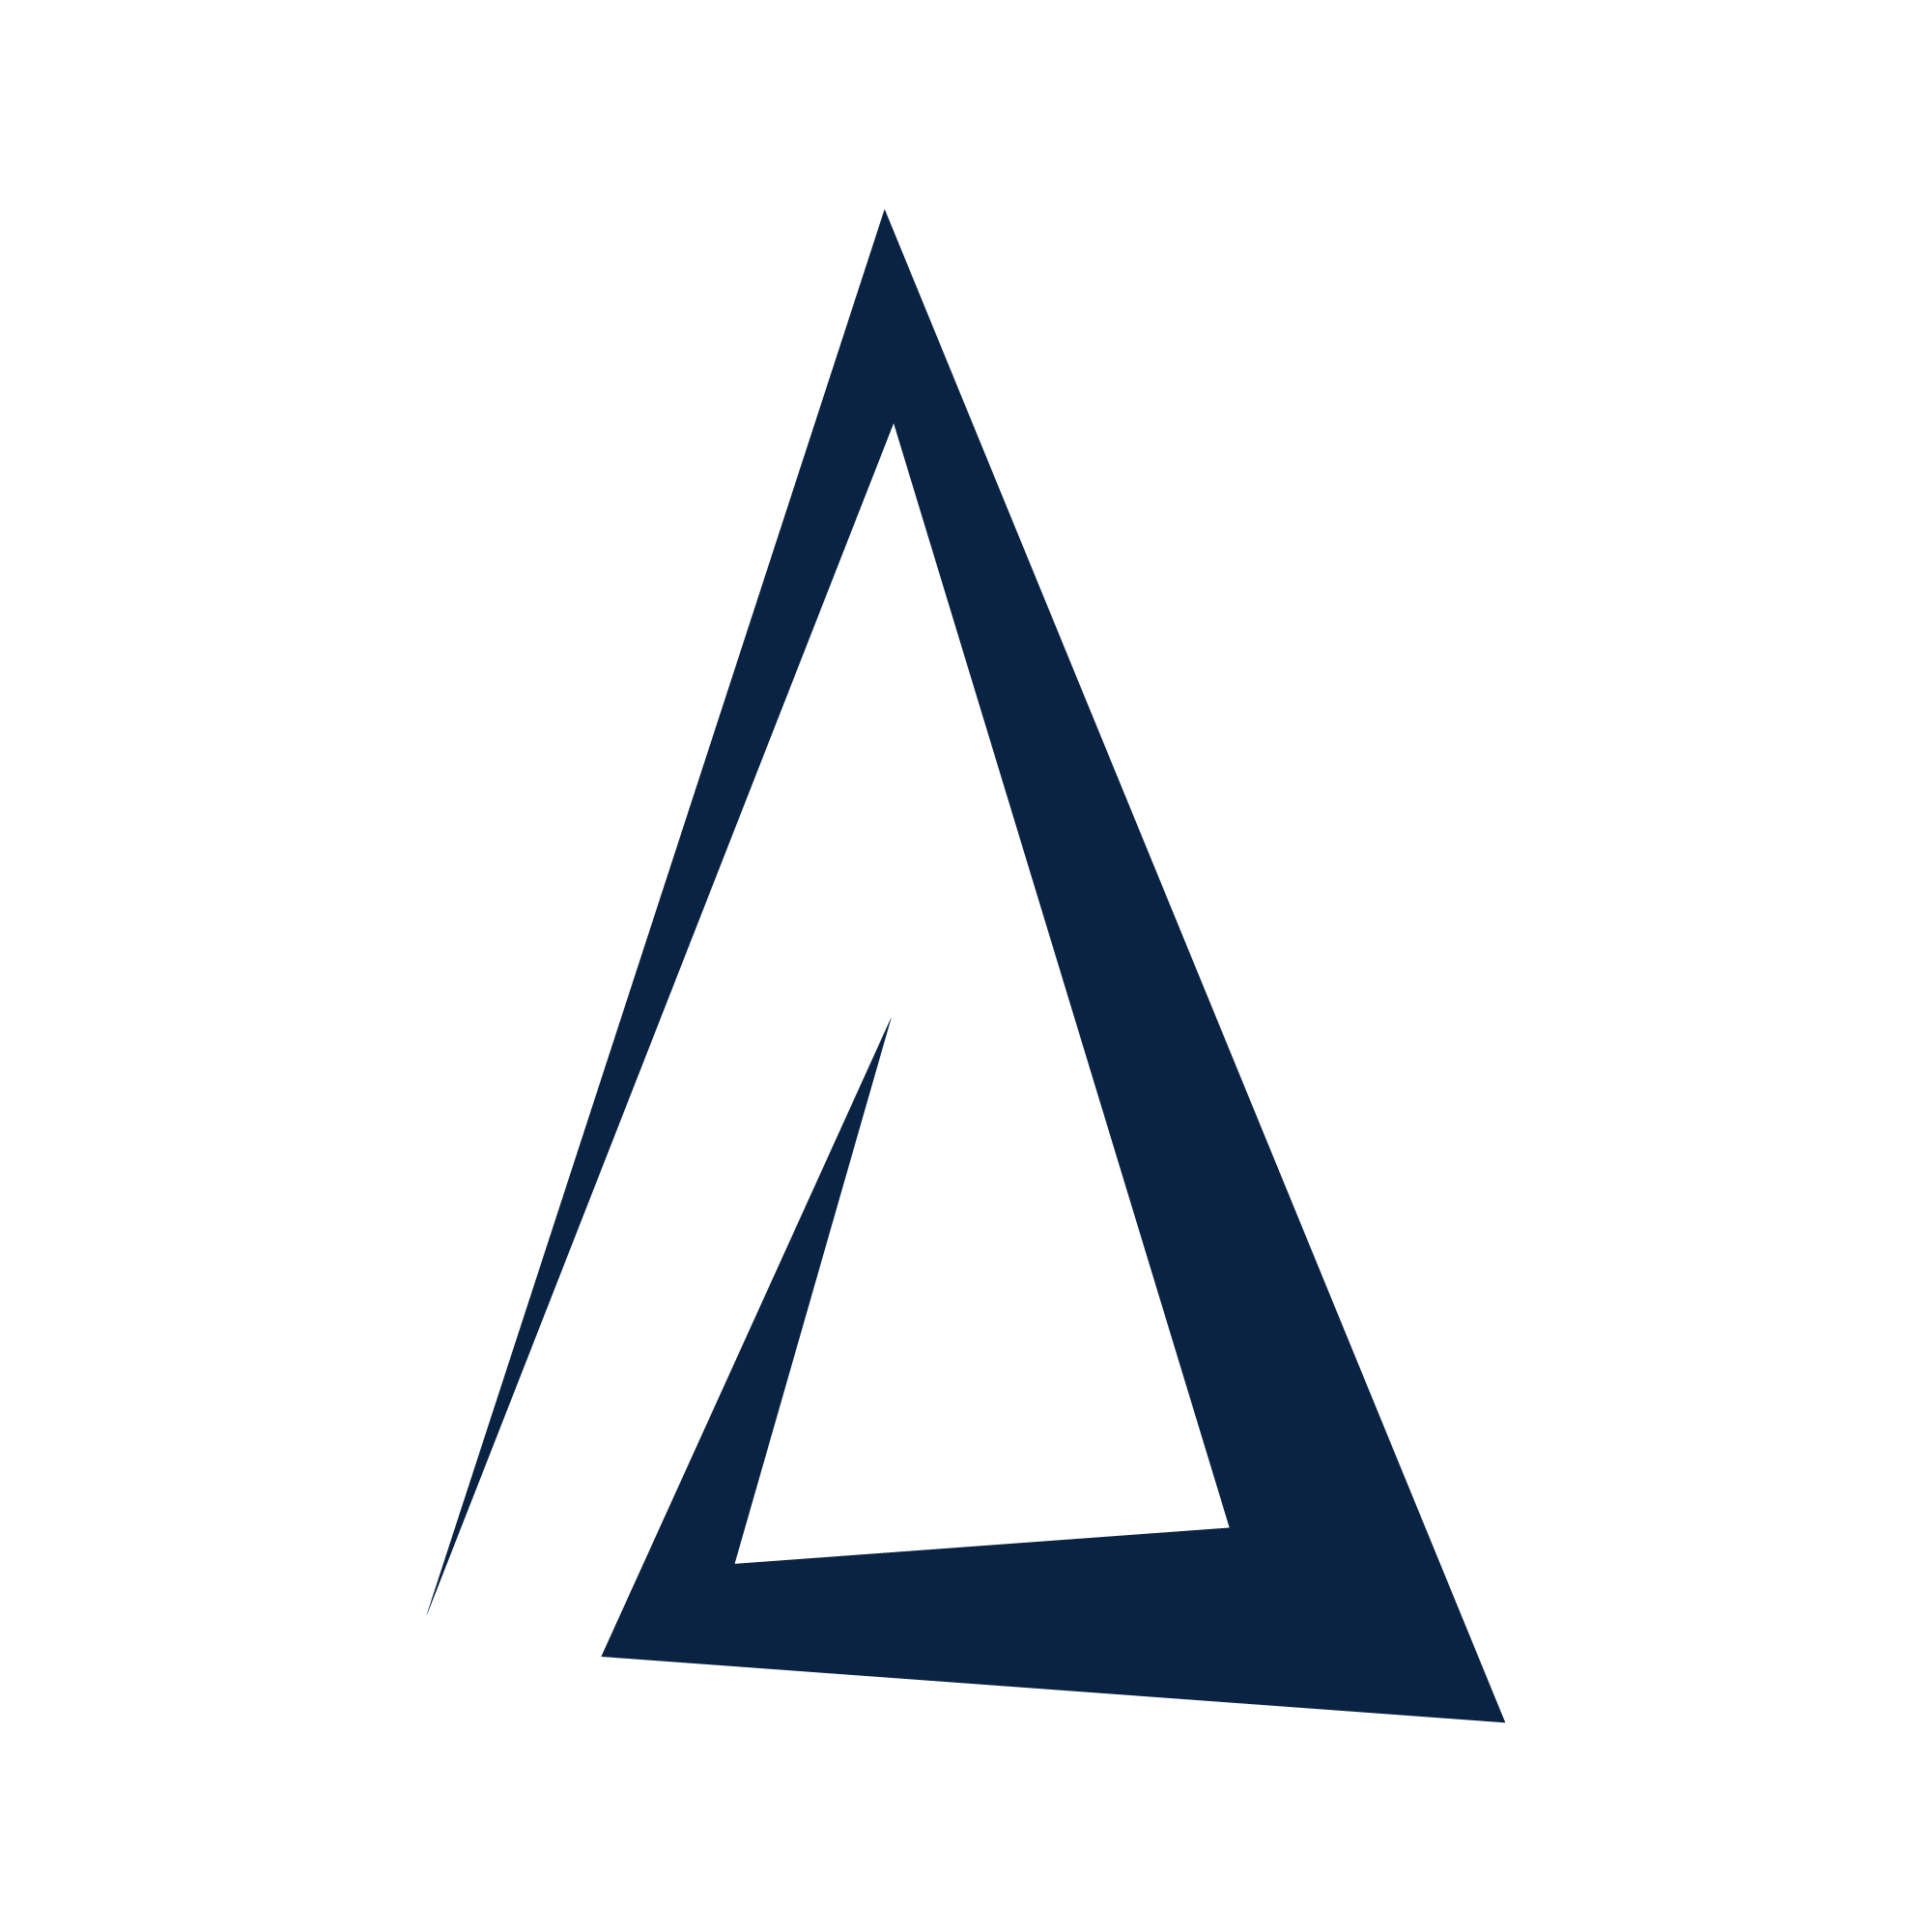 Blue logo for Alphadico.